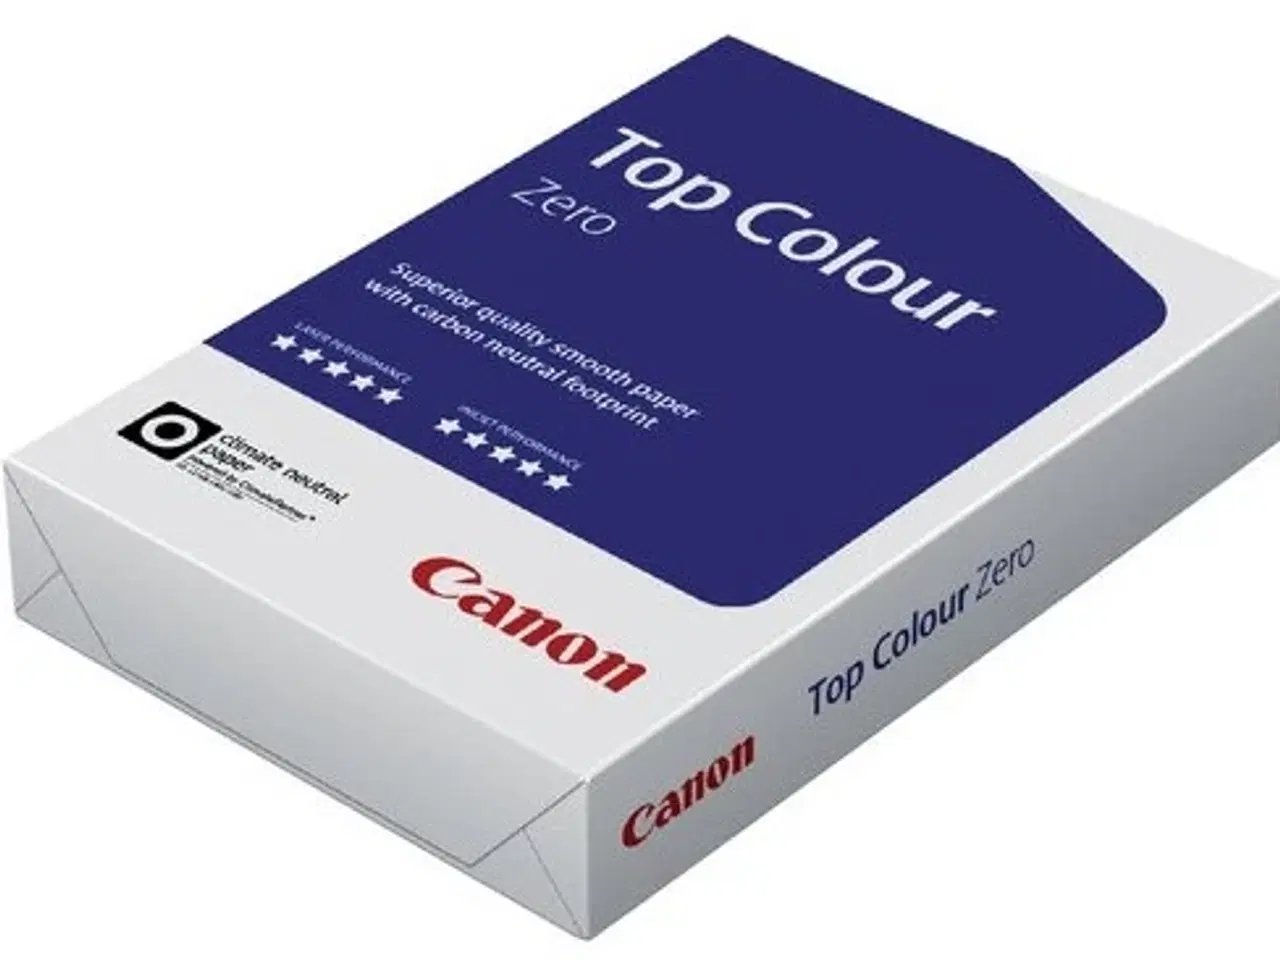 Billede 5 - Canon kopi- og printerpapir i top kvalitet